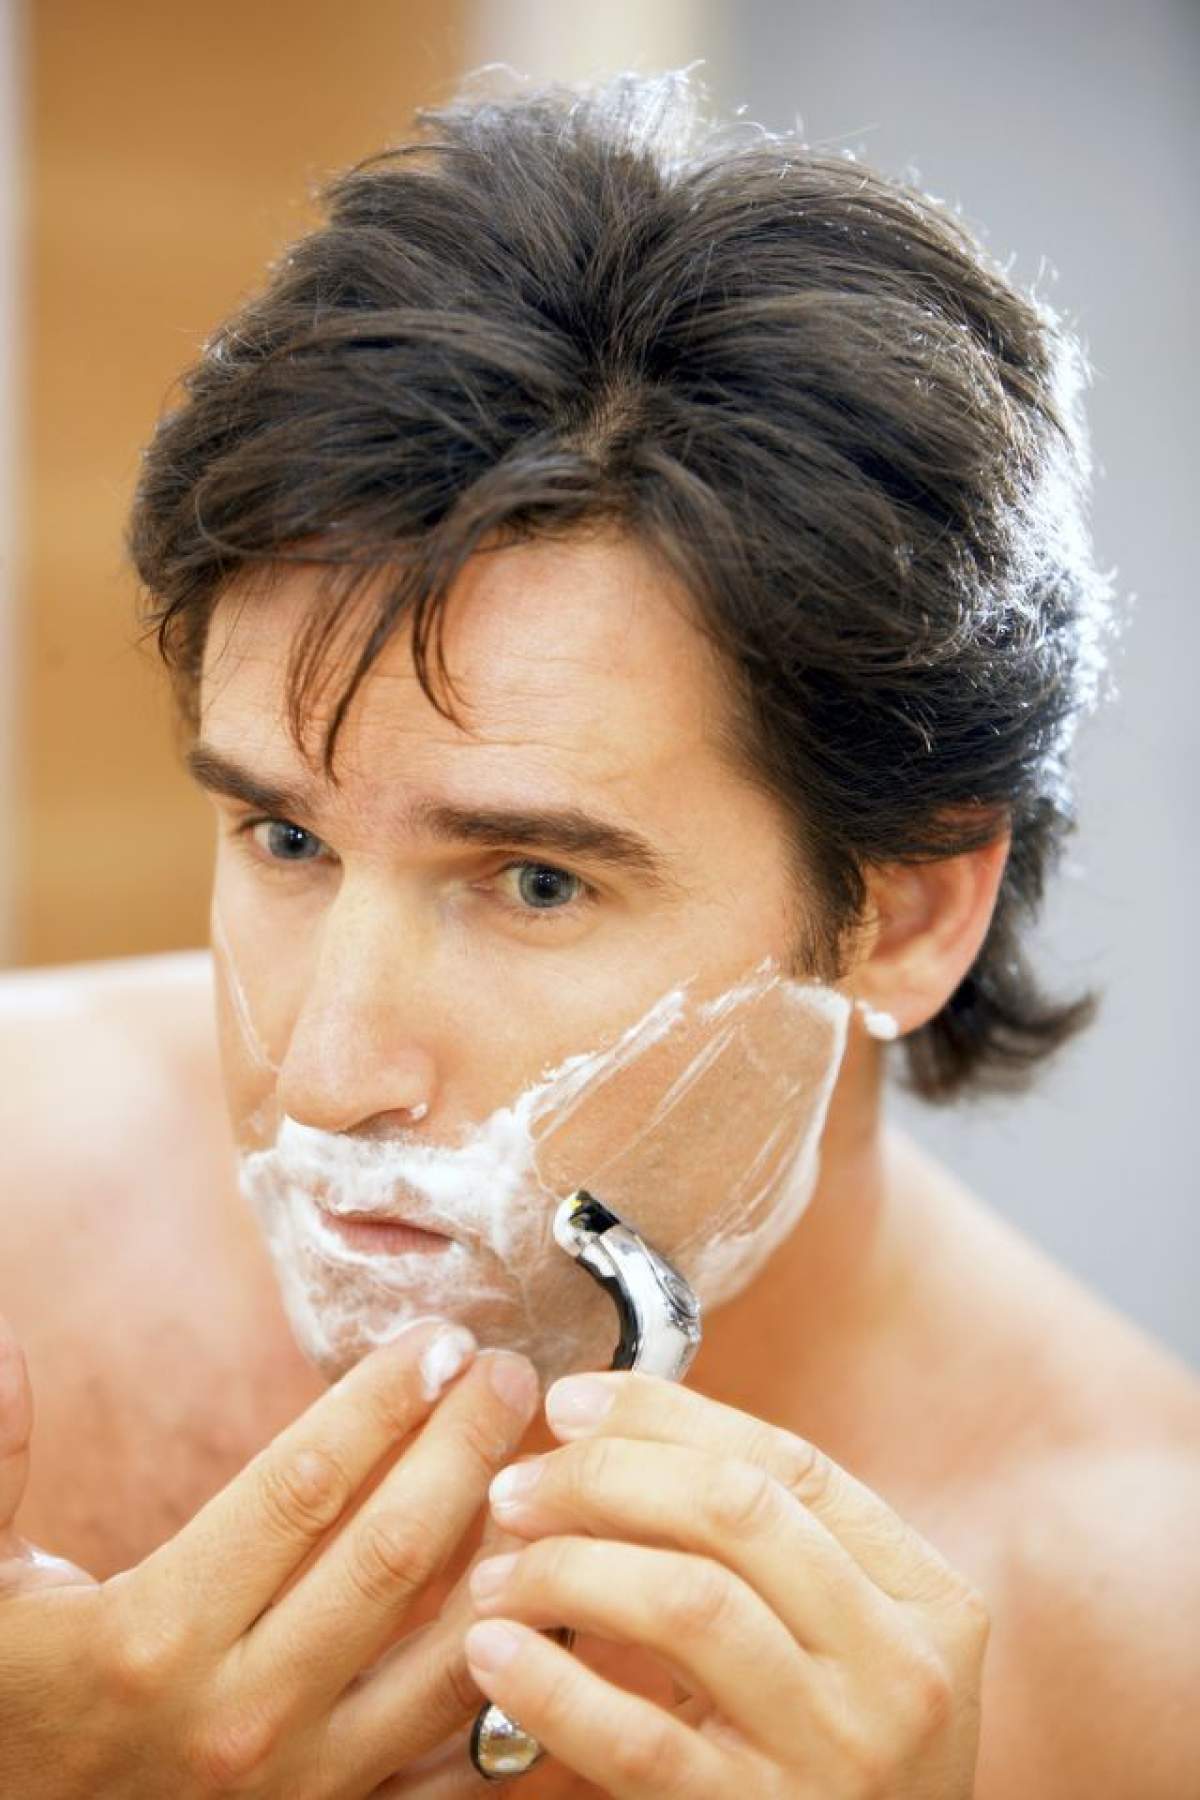 ÎNTREBAREA ZILEI - MIERCURI: Câte ore din viaţă petrece un bărbat ca să se bărbierească?